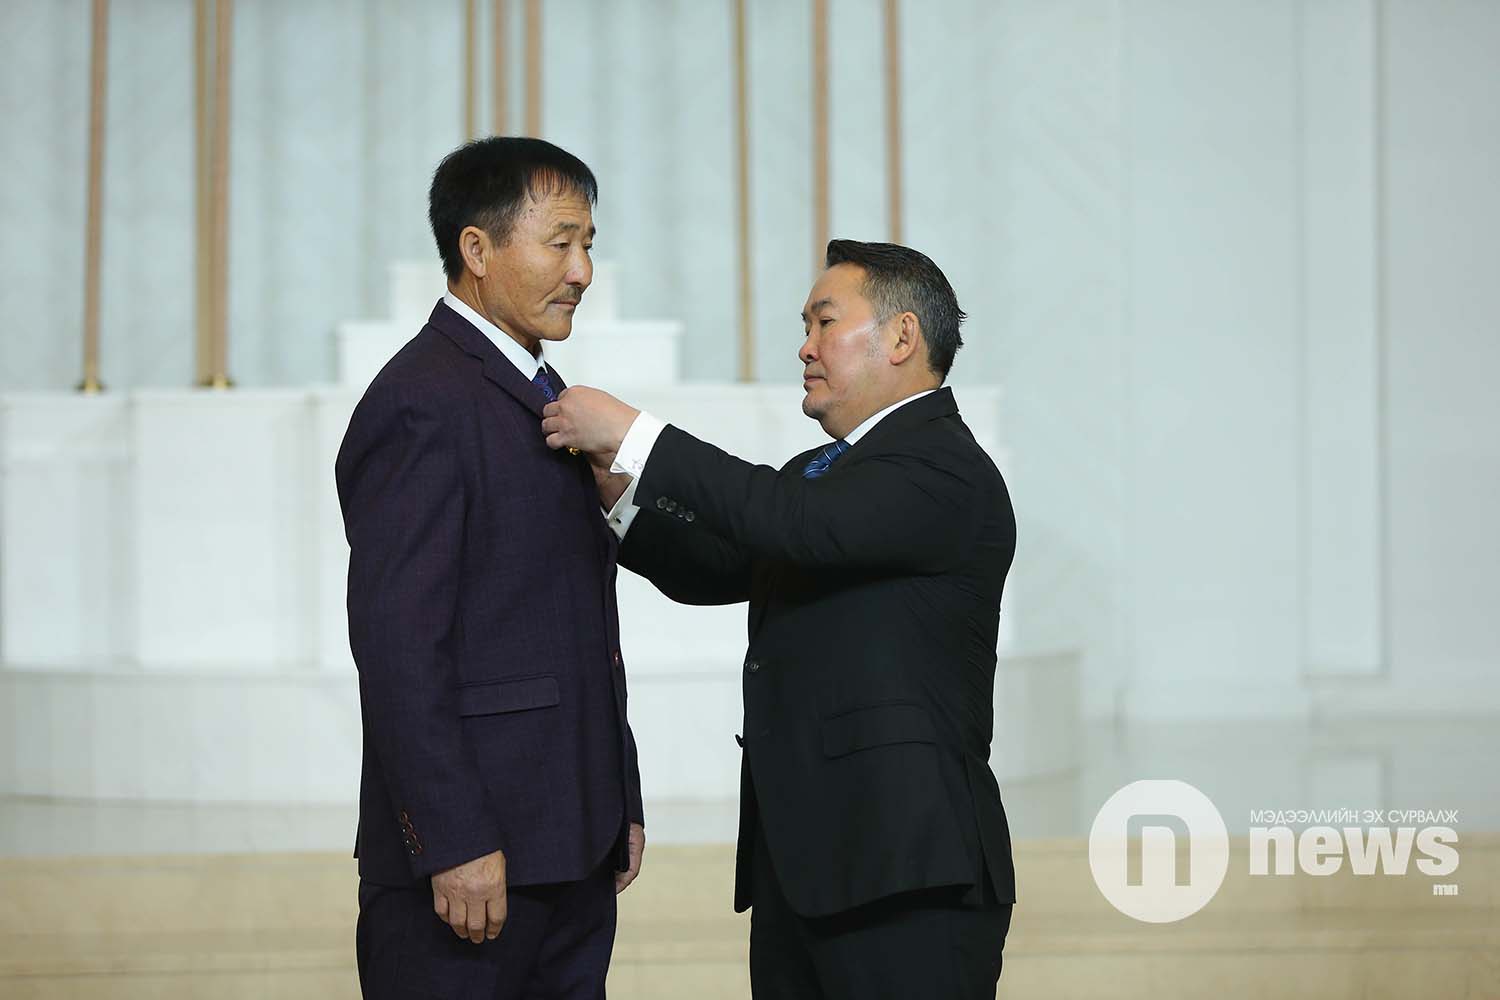 Монгол Улсын Ерөнхийлөгчийн зарлигаар Төрийн дээд одон, медаль гардуулах ёслол (44)